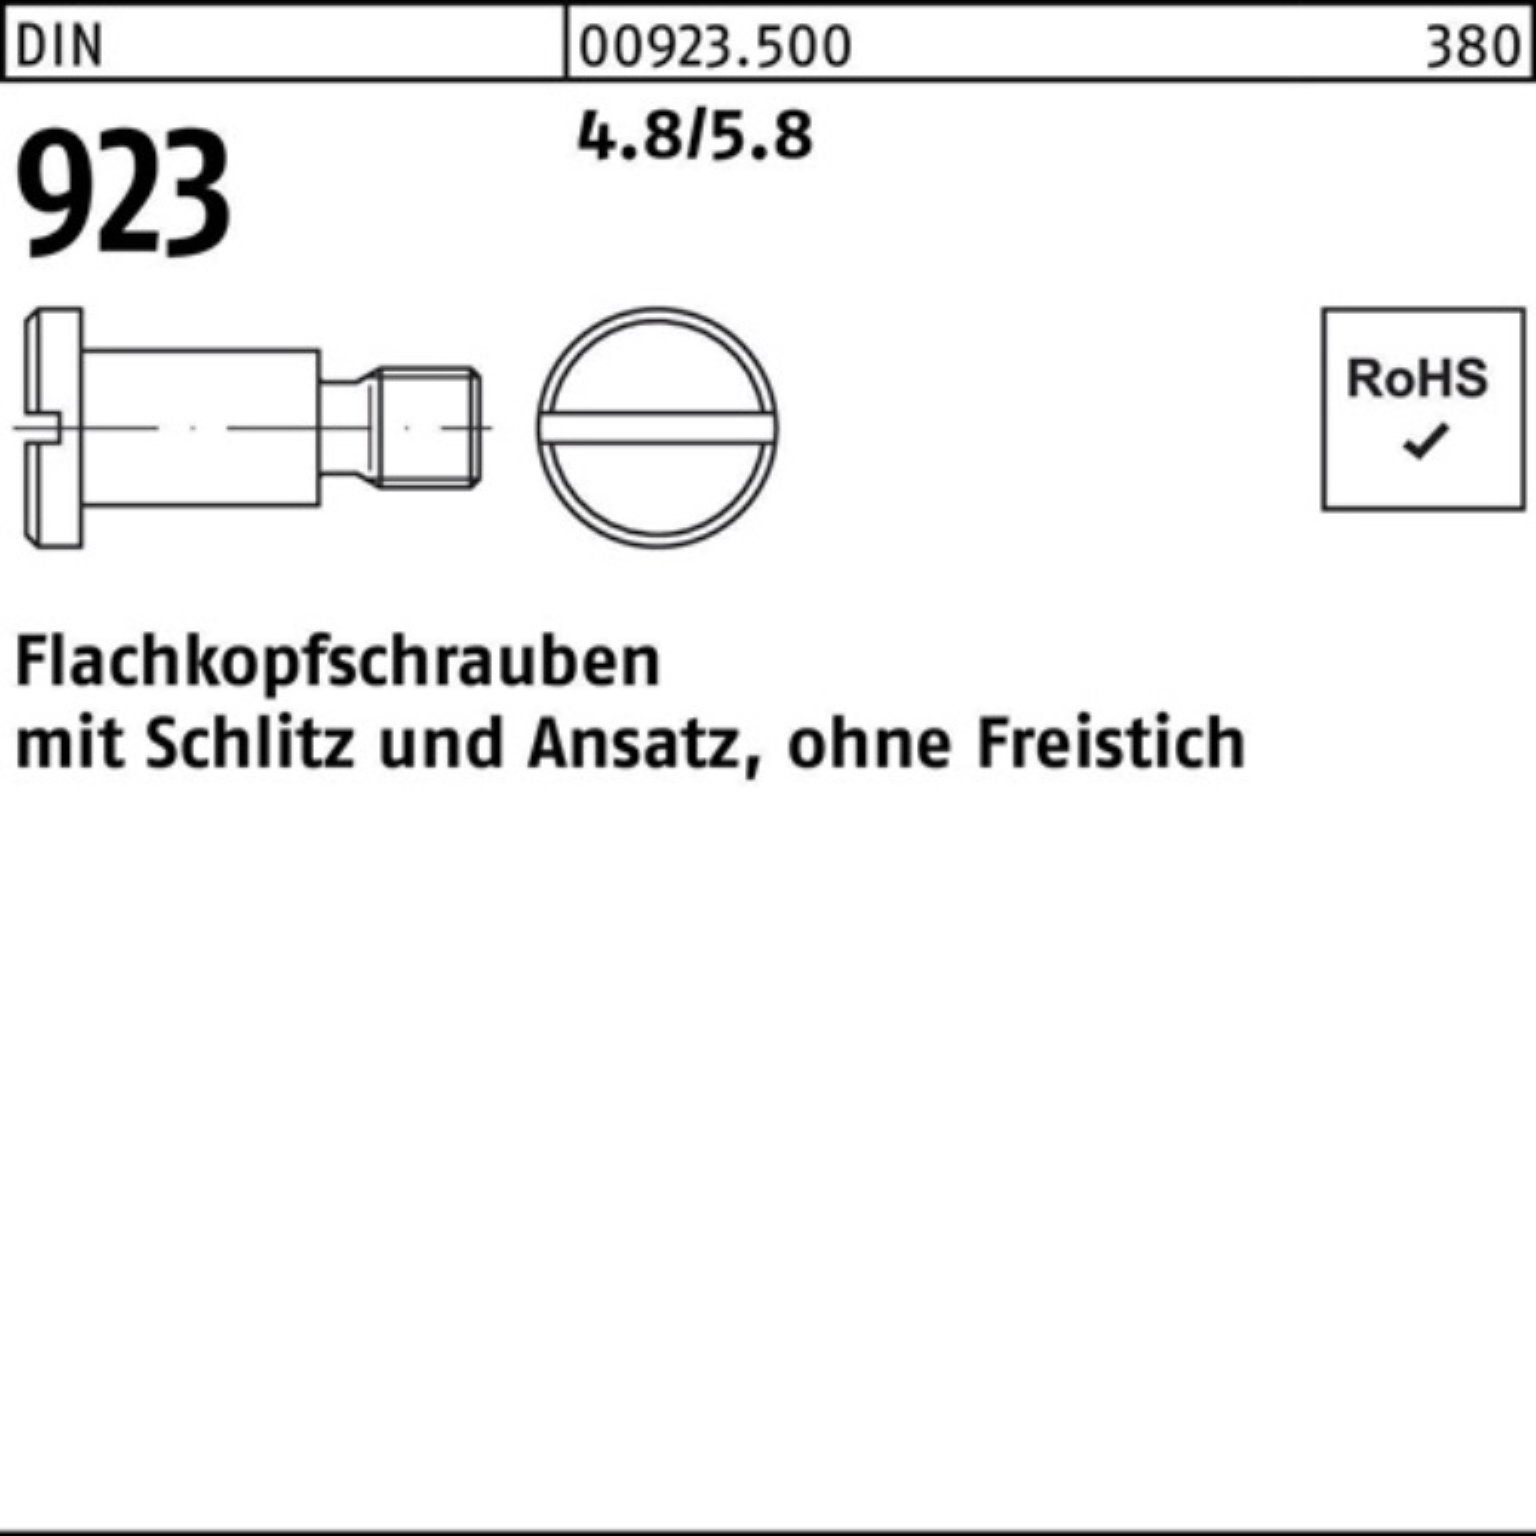 Pack Reyher M8x10x11,0 Flachkopfschraube DIN Schraube 4.8/5.8 Schlitz/Ansatz 100er 923